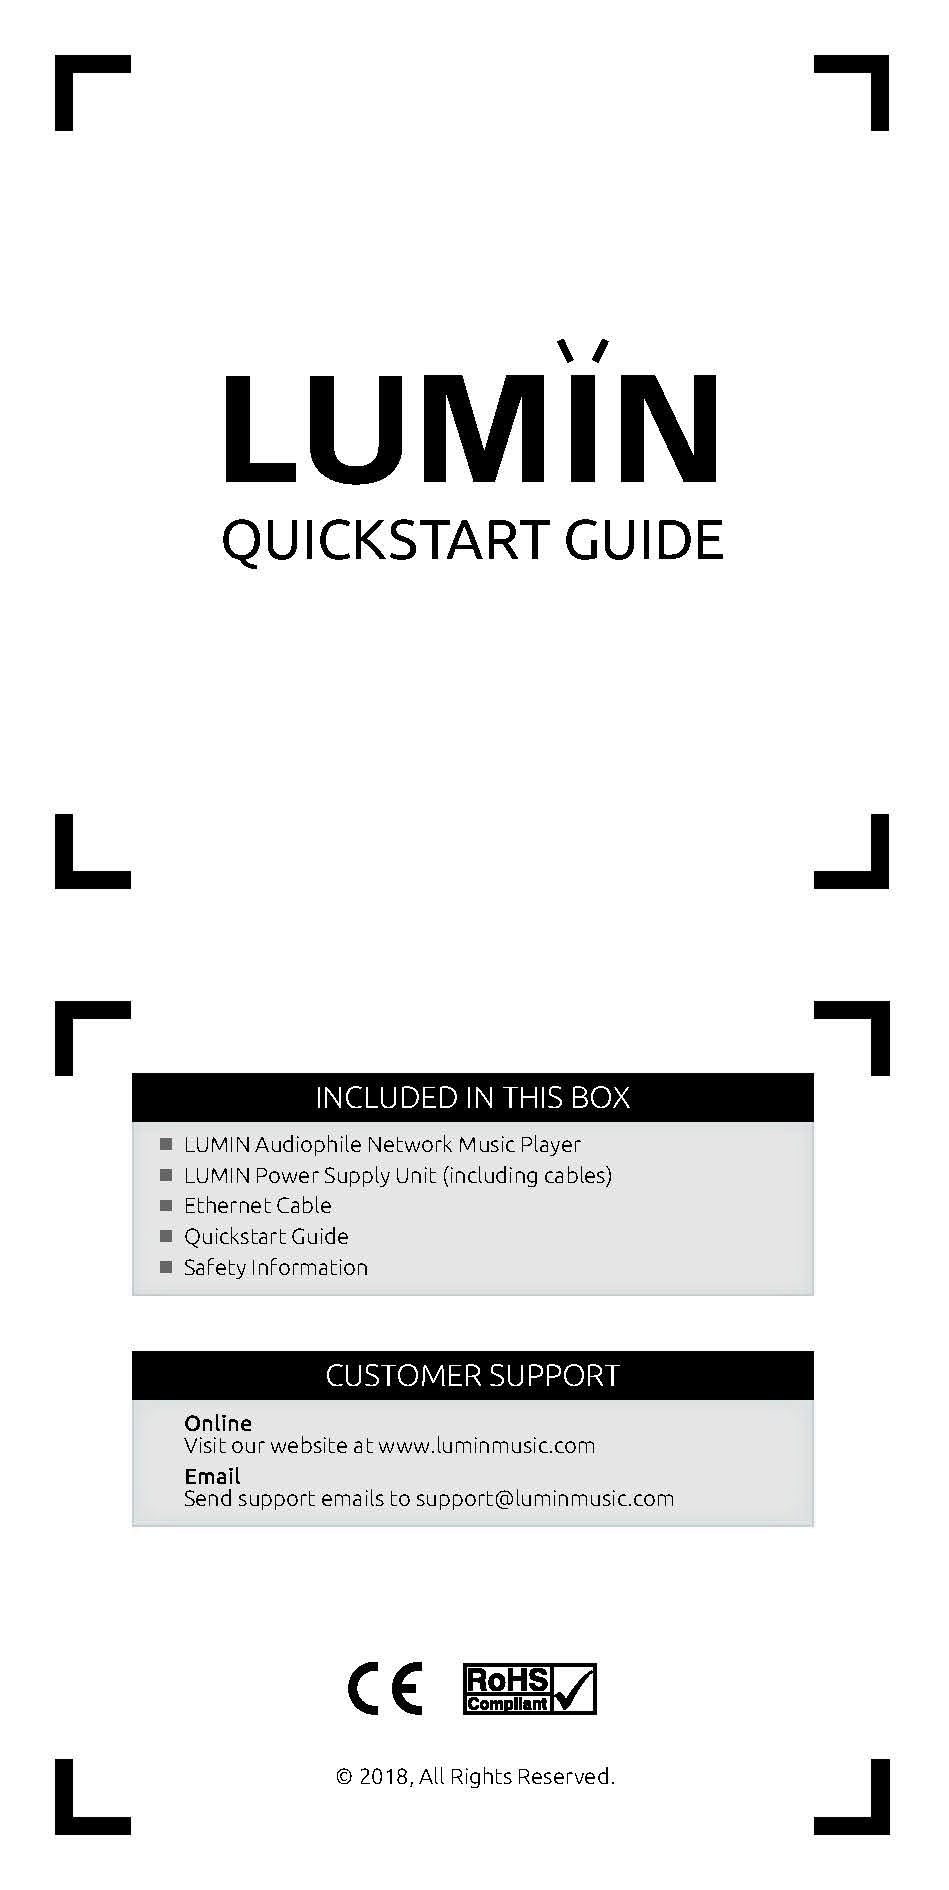 Lumin Quickstart Guide - Norman Audio